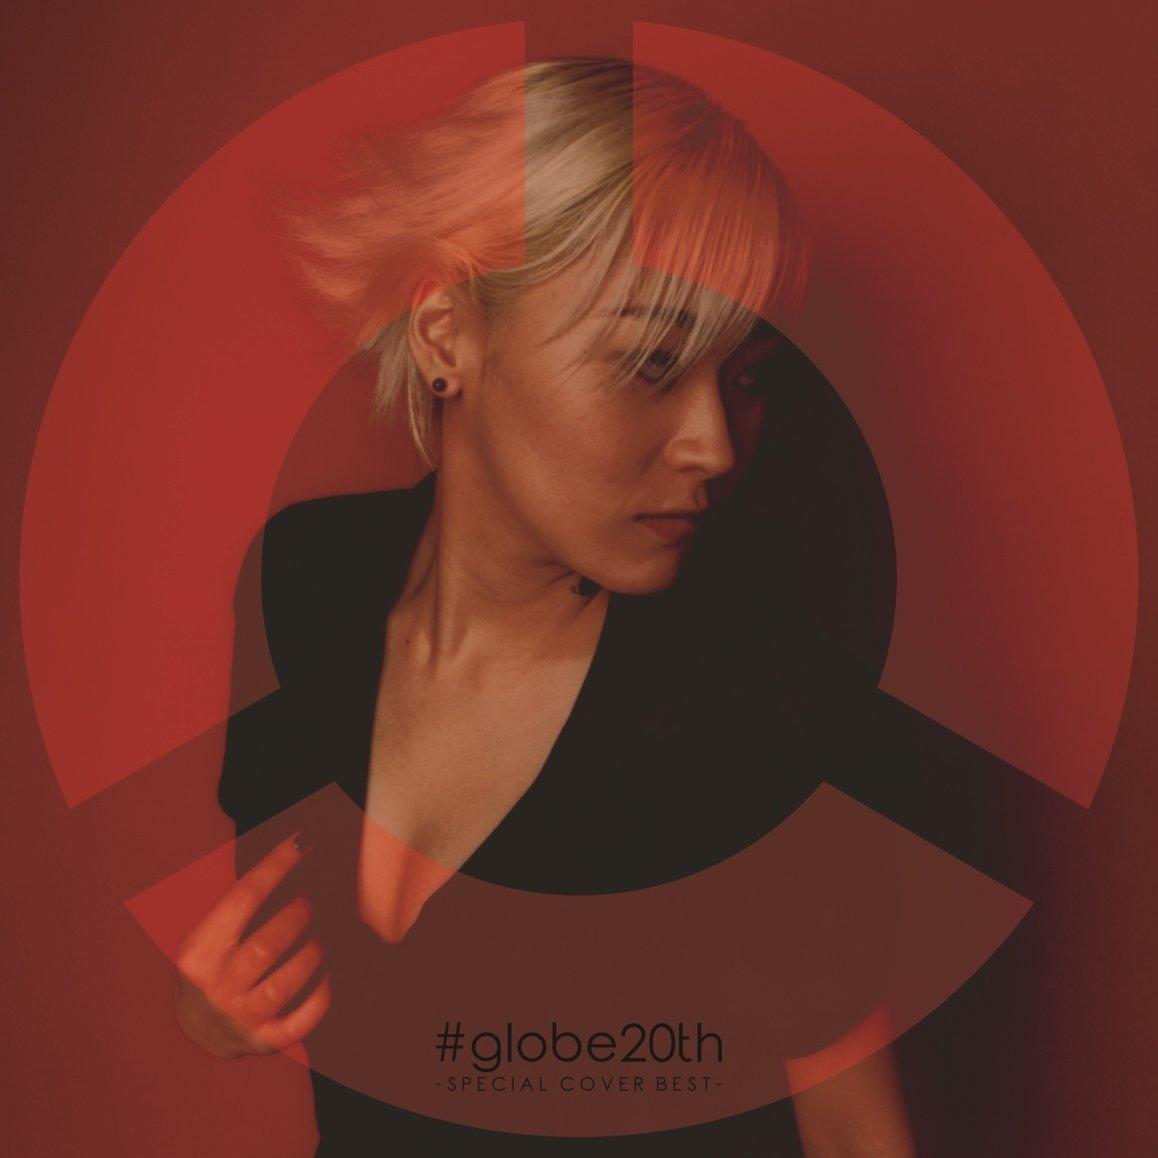 O[uXyVJo[Ao (V.A.)/#globe20th -SPECIAL COVER BEST- AL(2g) yCDz